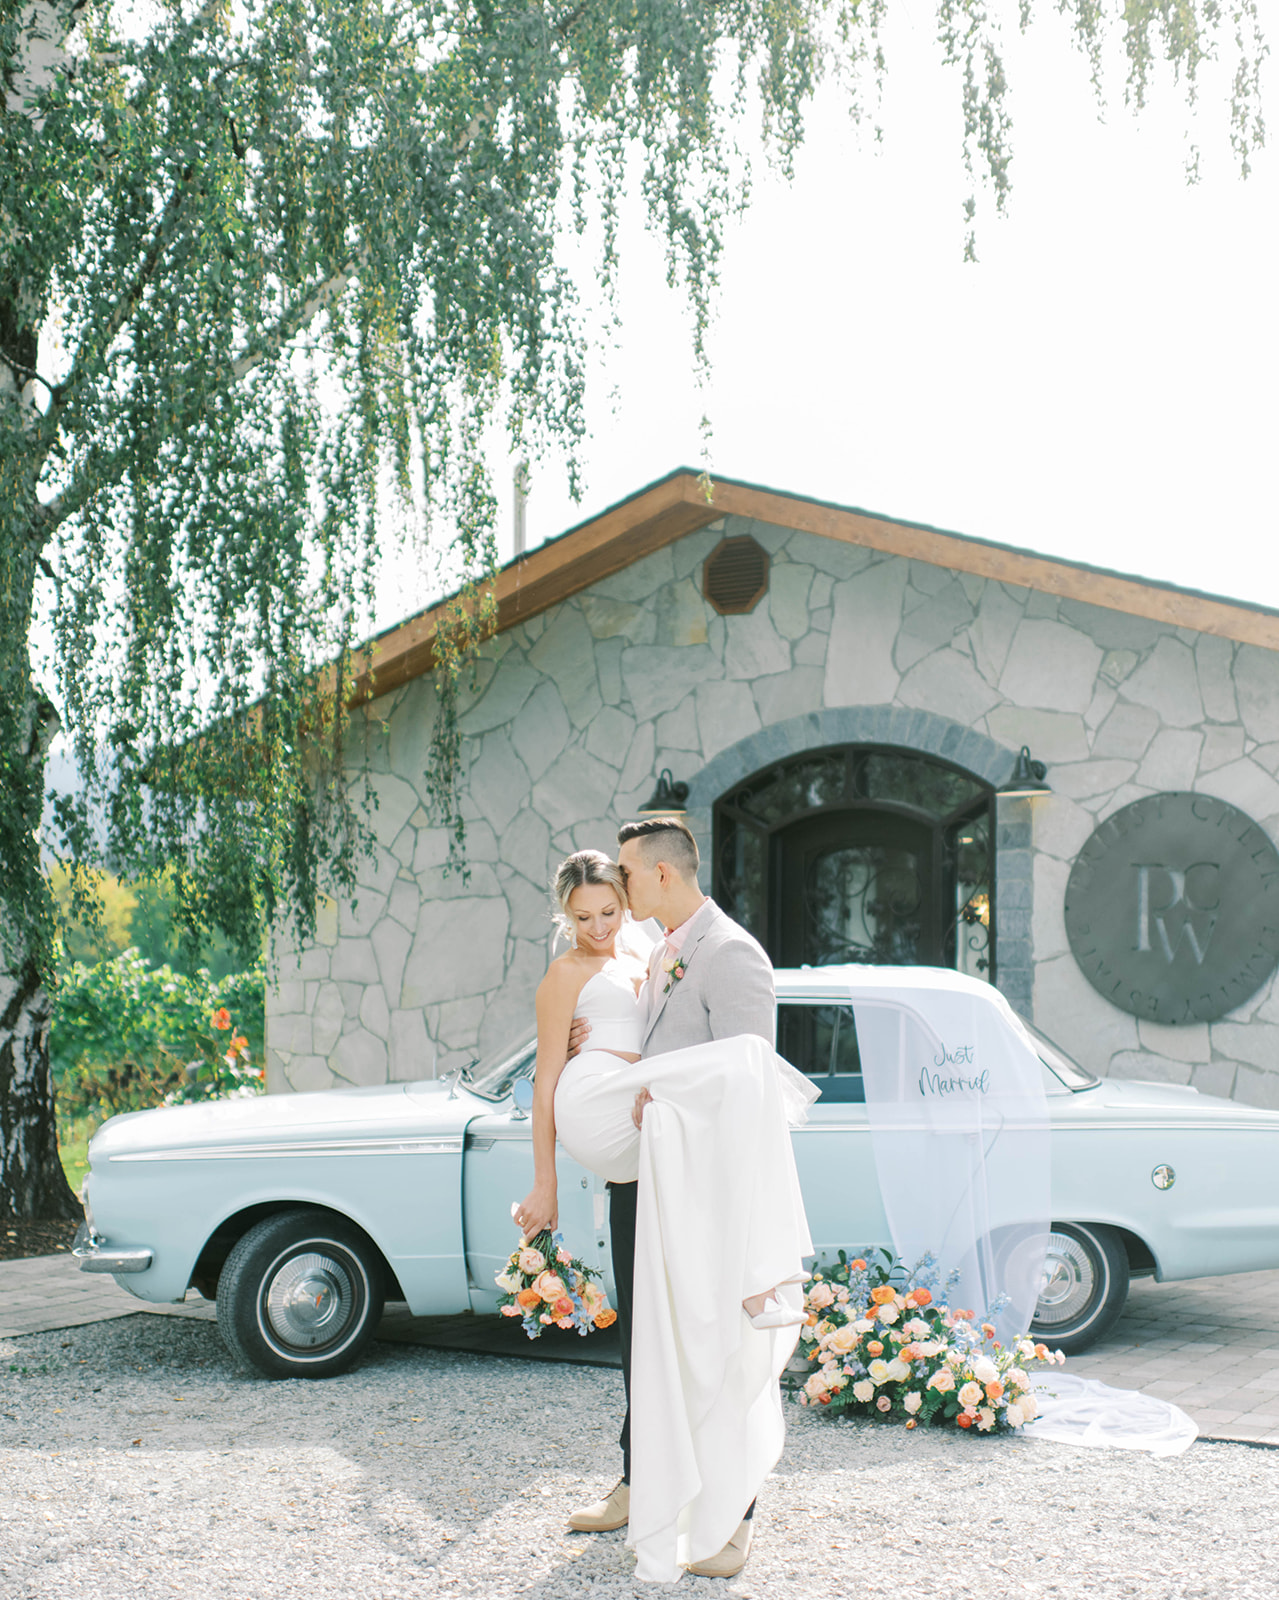 Groom carries bride in romantic couple's portrait at a Kelowna winery wedding, baby blue vintage wedding rental car